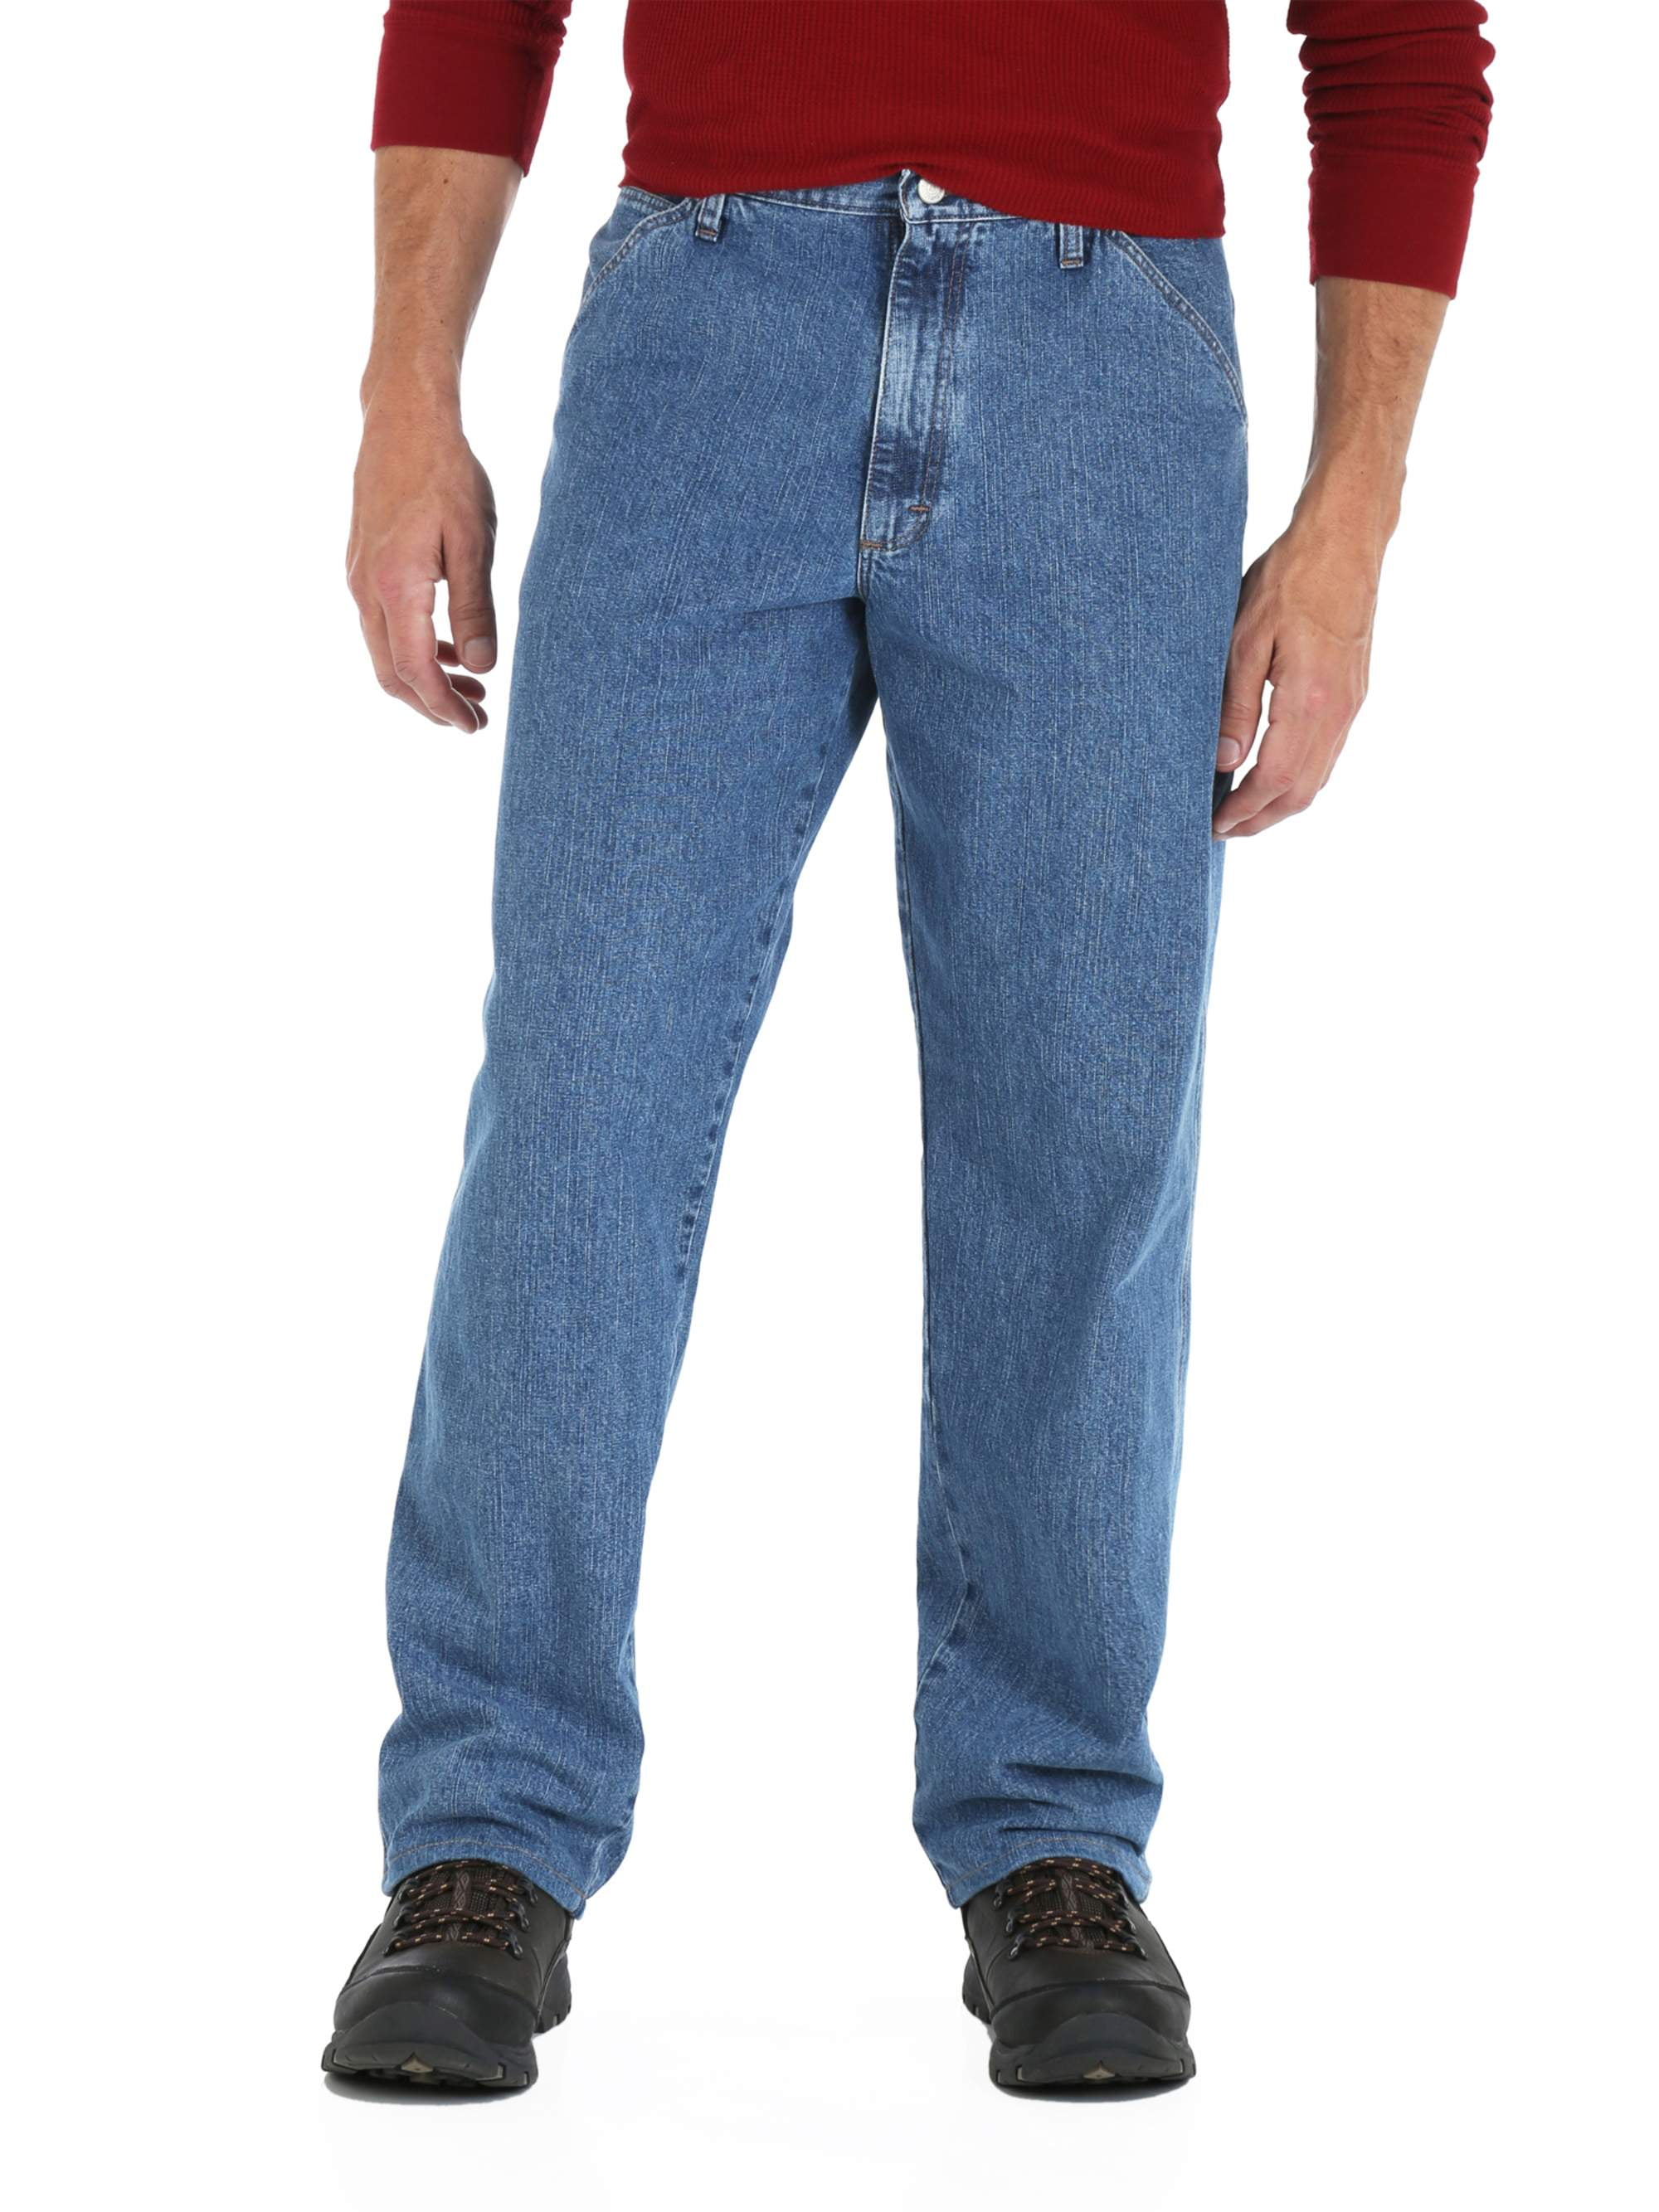 walmart wrangler carpenter jeans